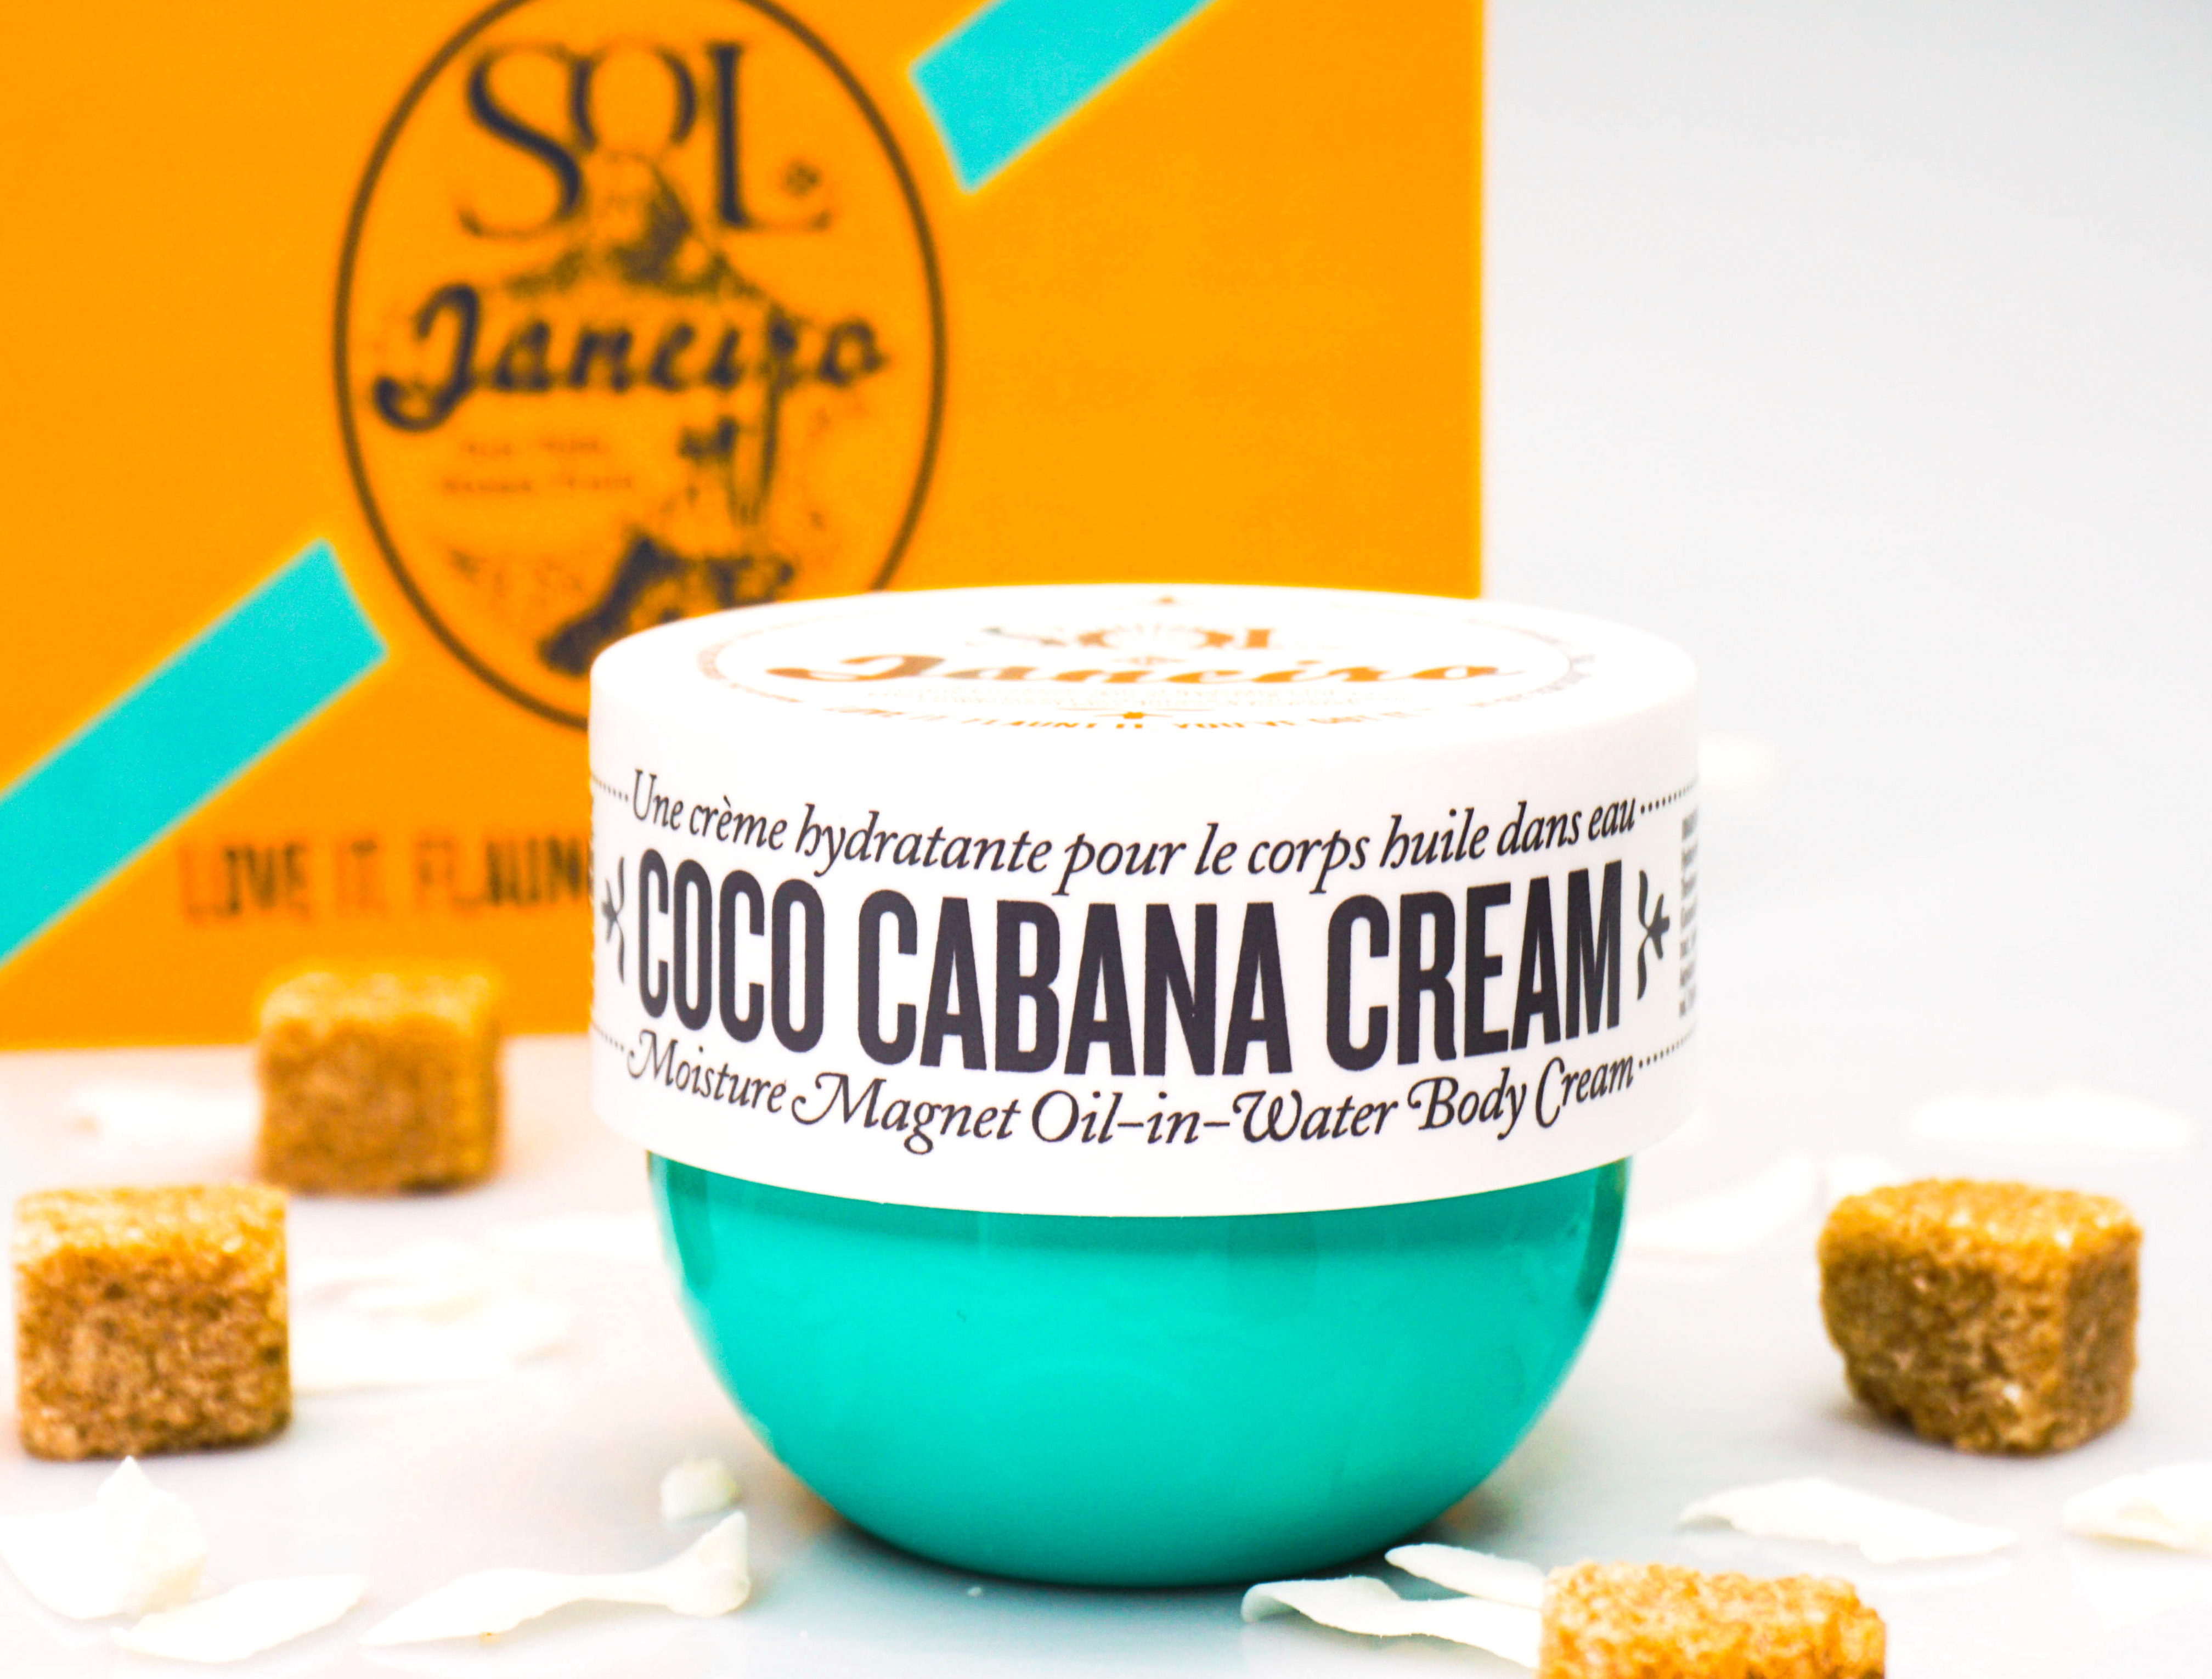 SOL DE JANEIRO Coco Cabana Cream - Highendlove